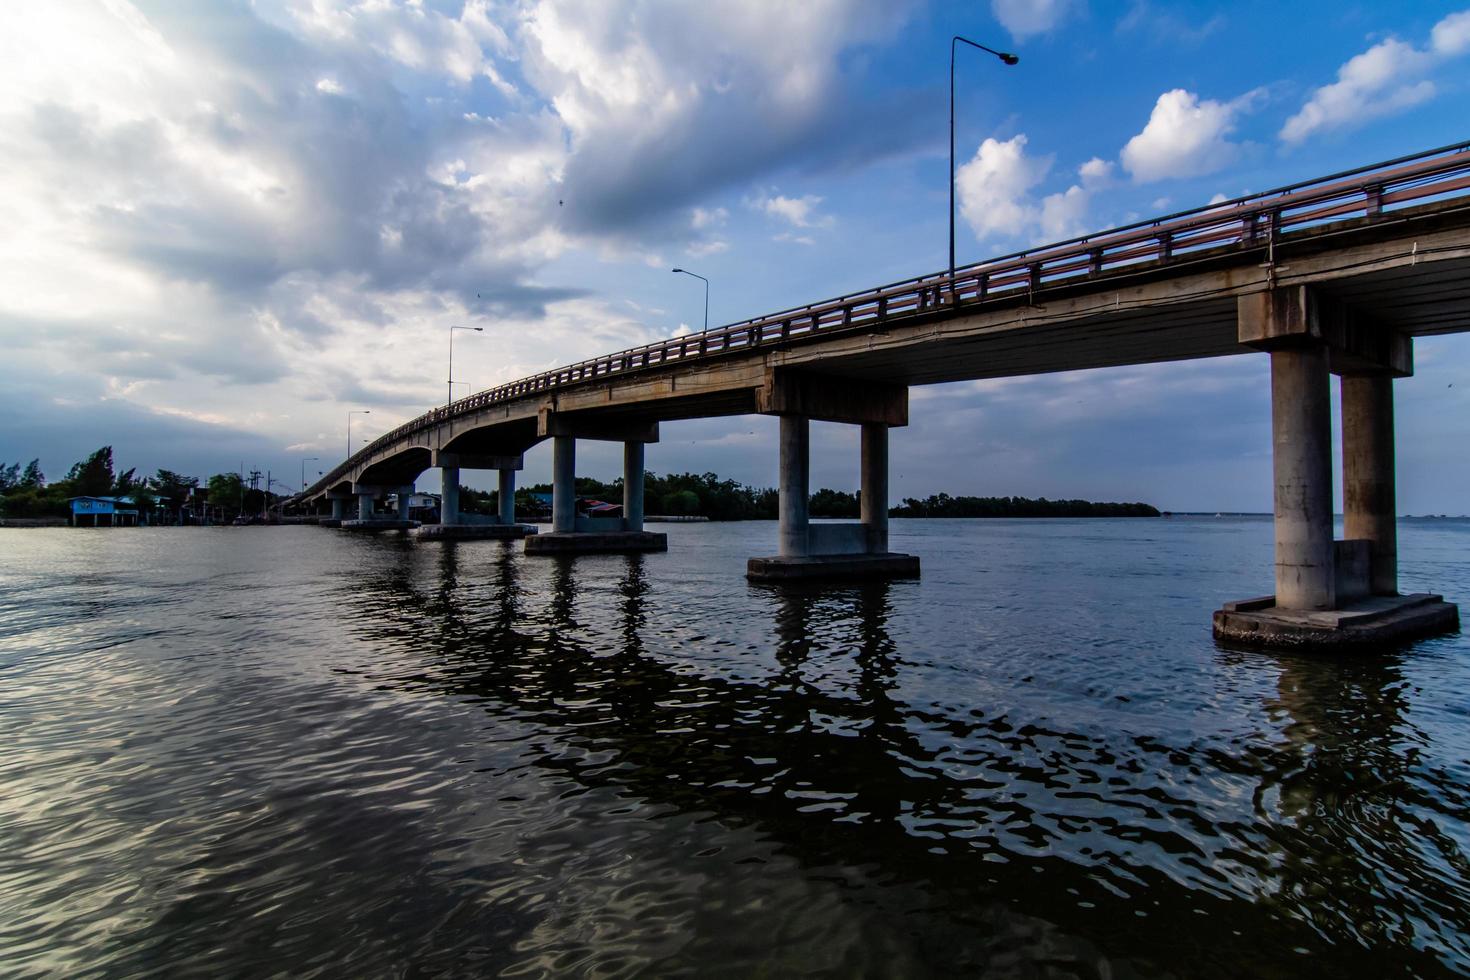 la imagen de hermosas nubes de lluvia reunidas en movimiento sobre el puente sobre el río foto